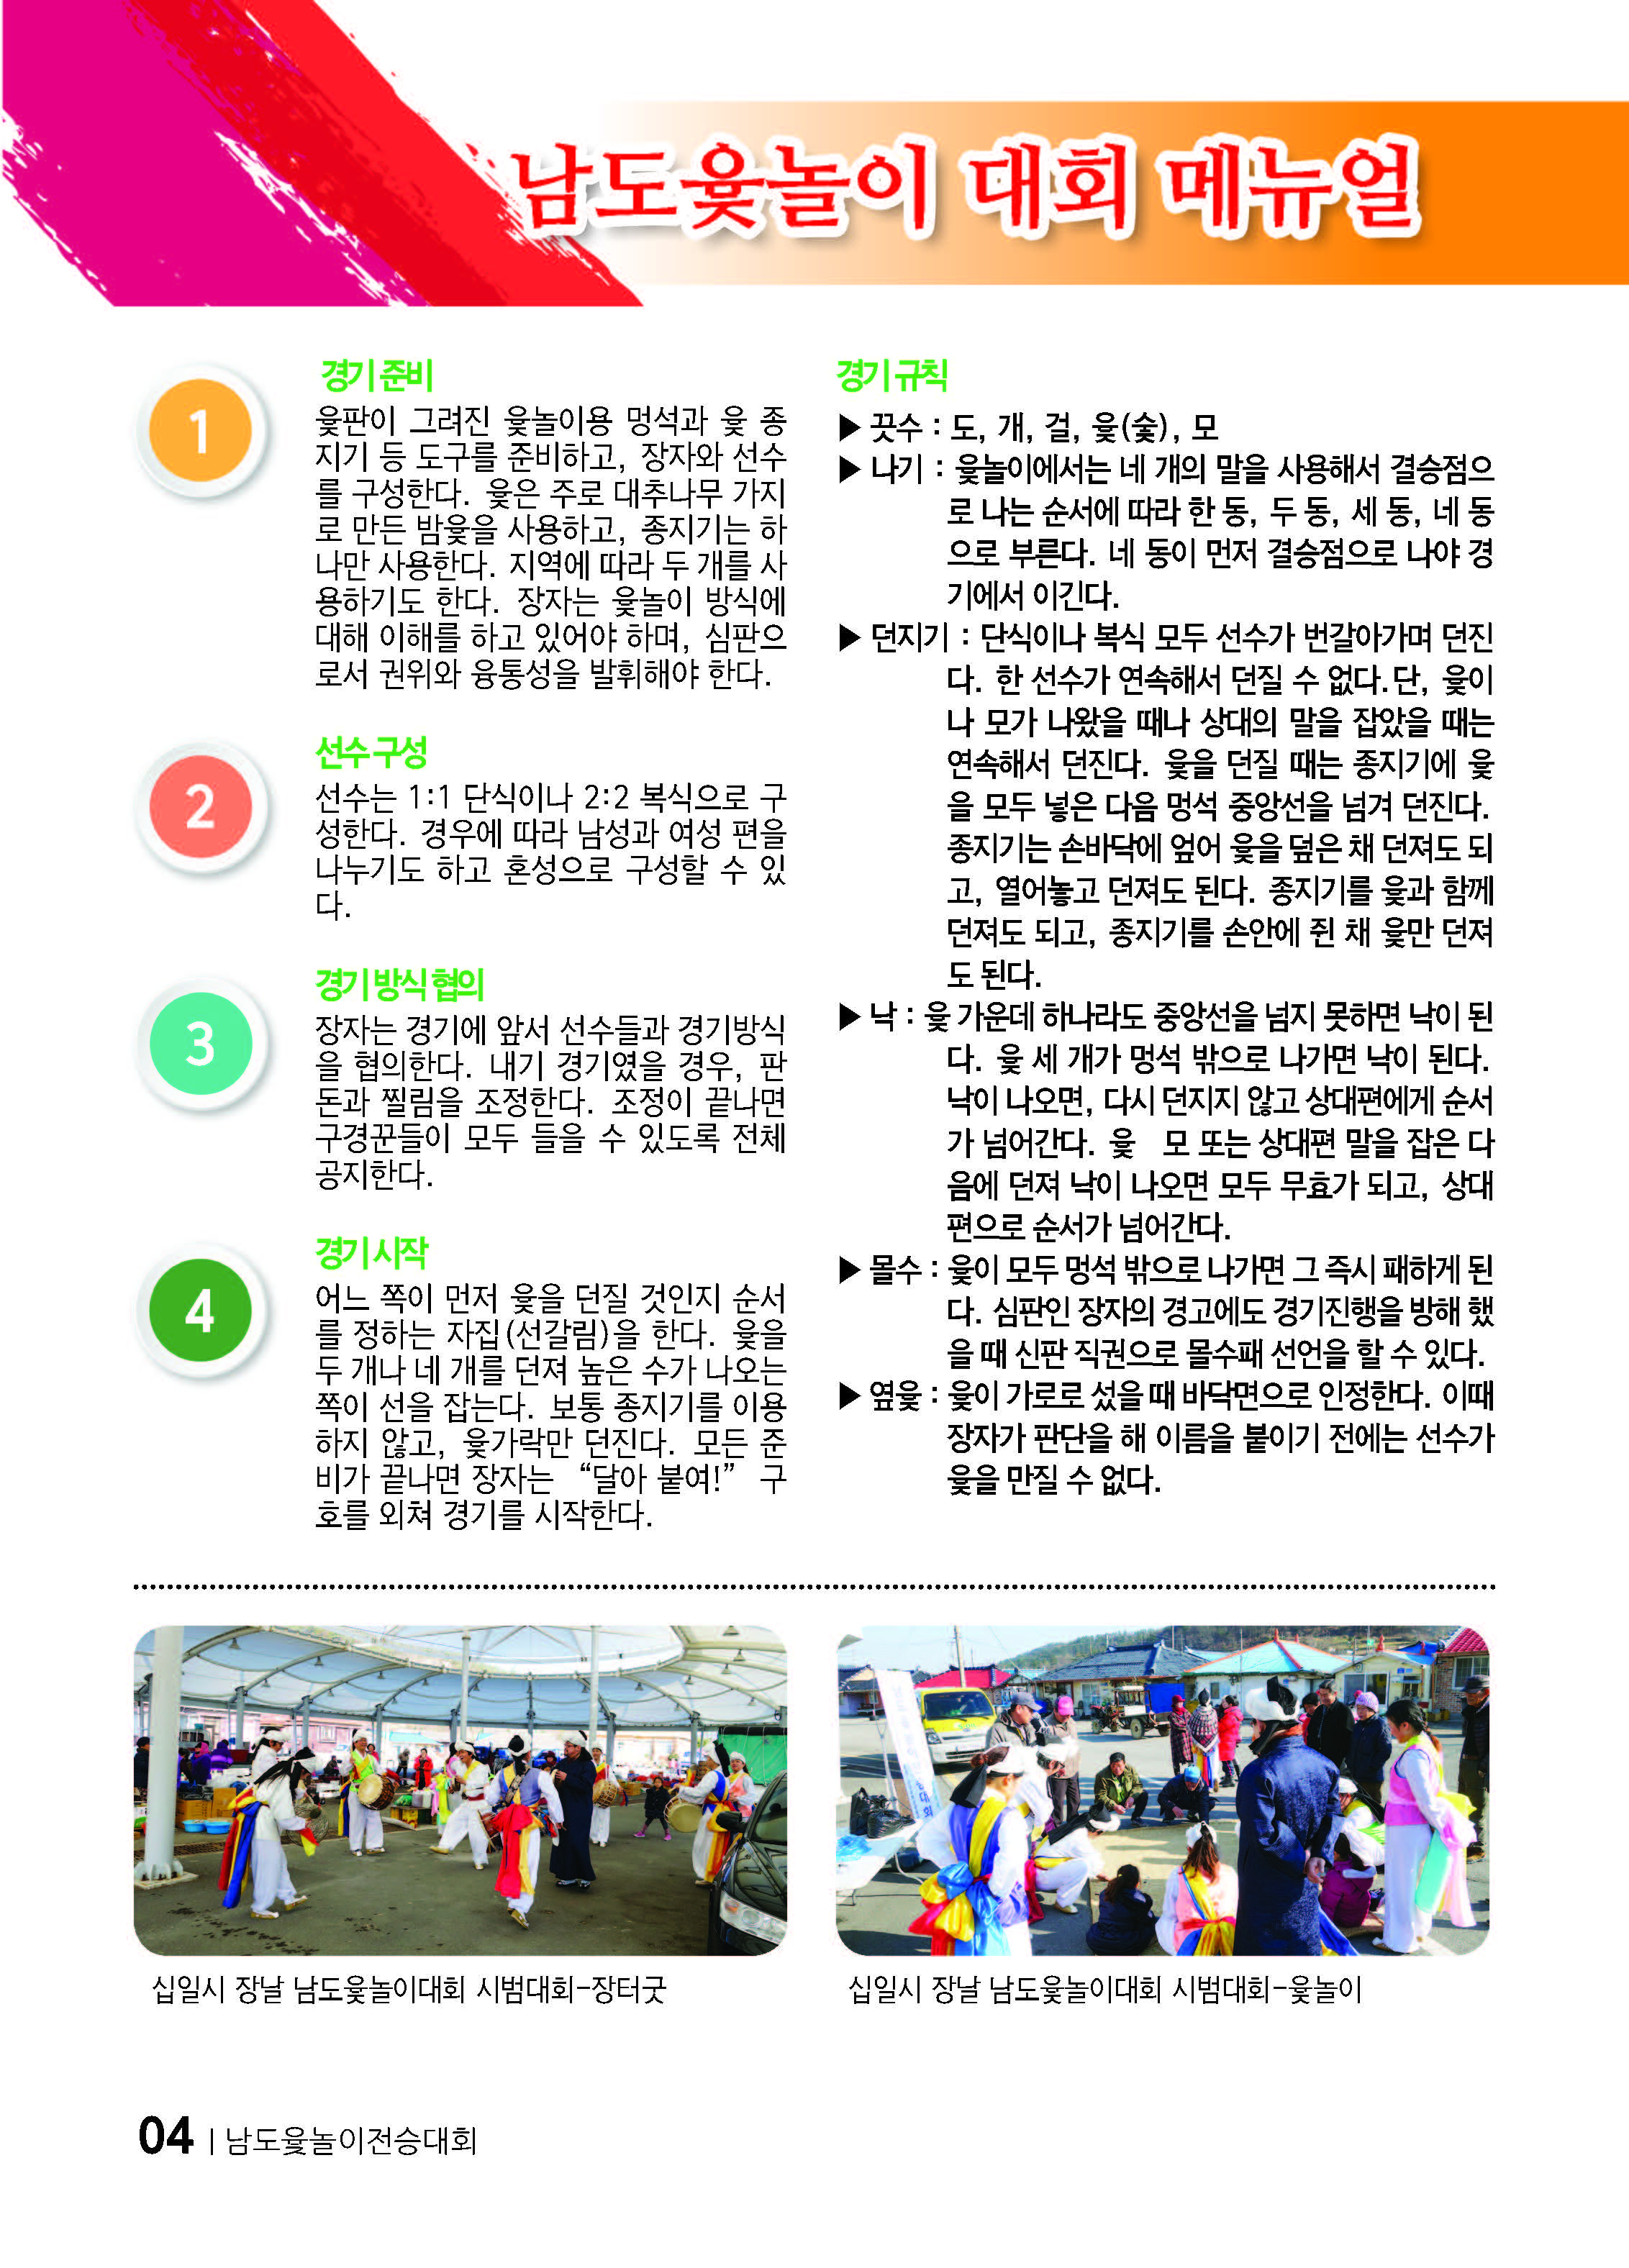 설날맞이~~ 제1회 남도윷놀이전승대회 보고 첨부#4